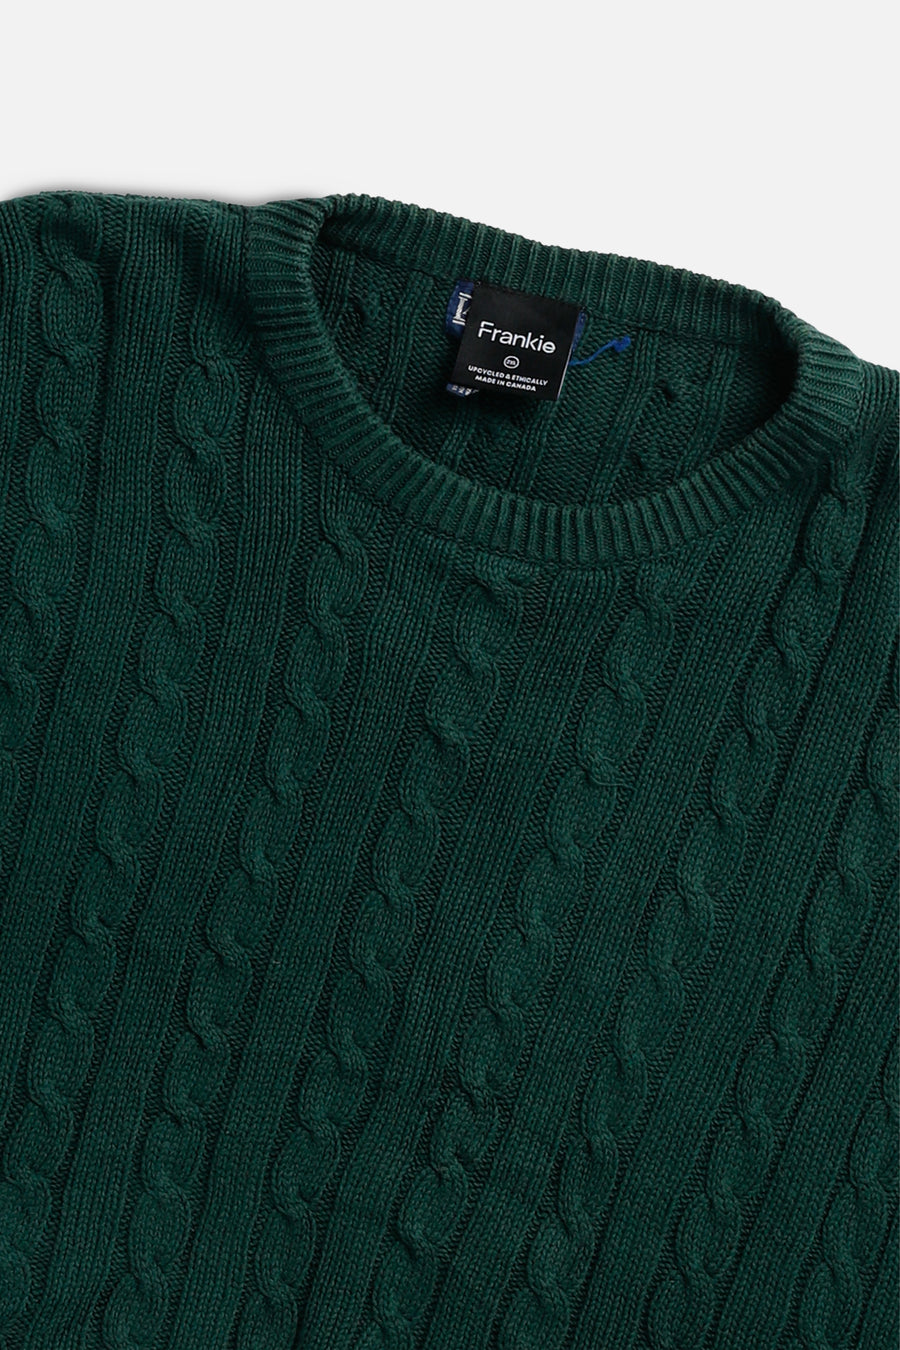 Rework Crop Knit Sweater - XXL